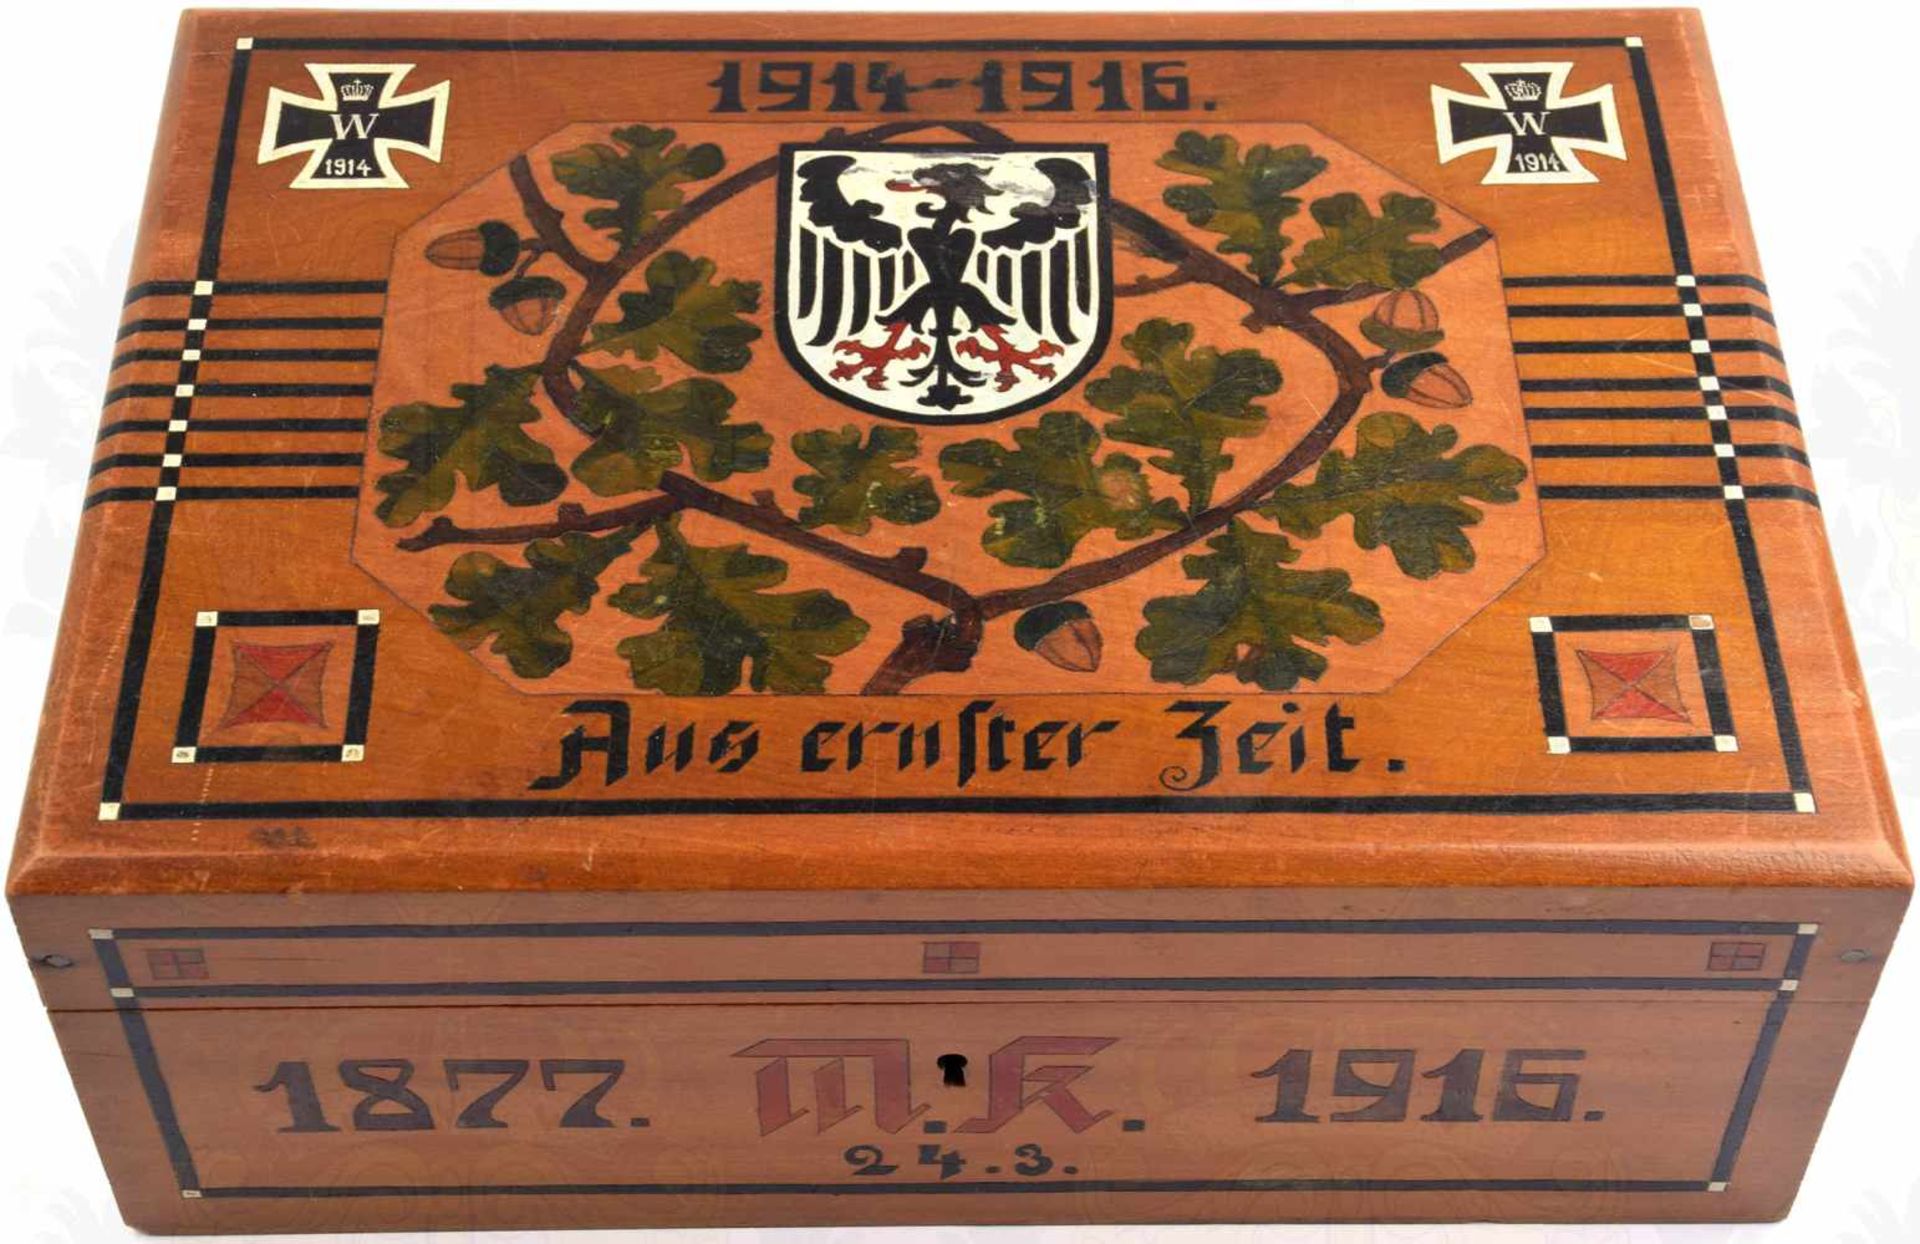 PATRIOTISCHE SCHATULLE, Holz, Deckel m. Intarsien, 2 EK 1914, Adler im Wappenschild u. Eichenbrüche,